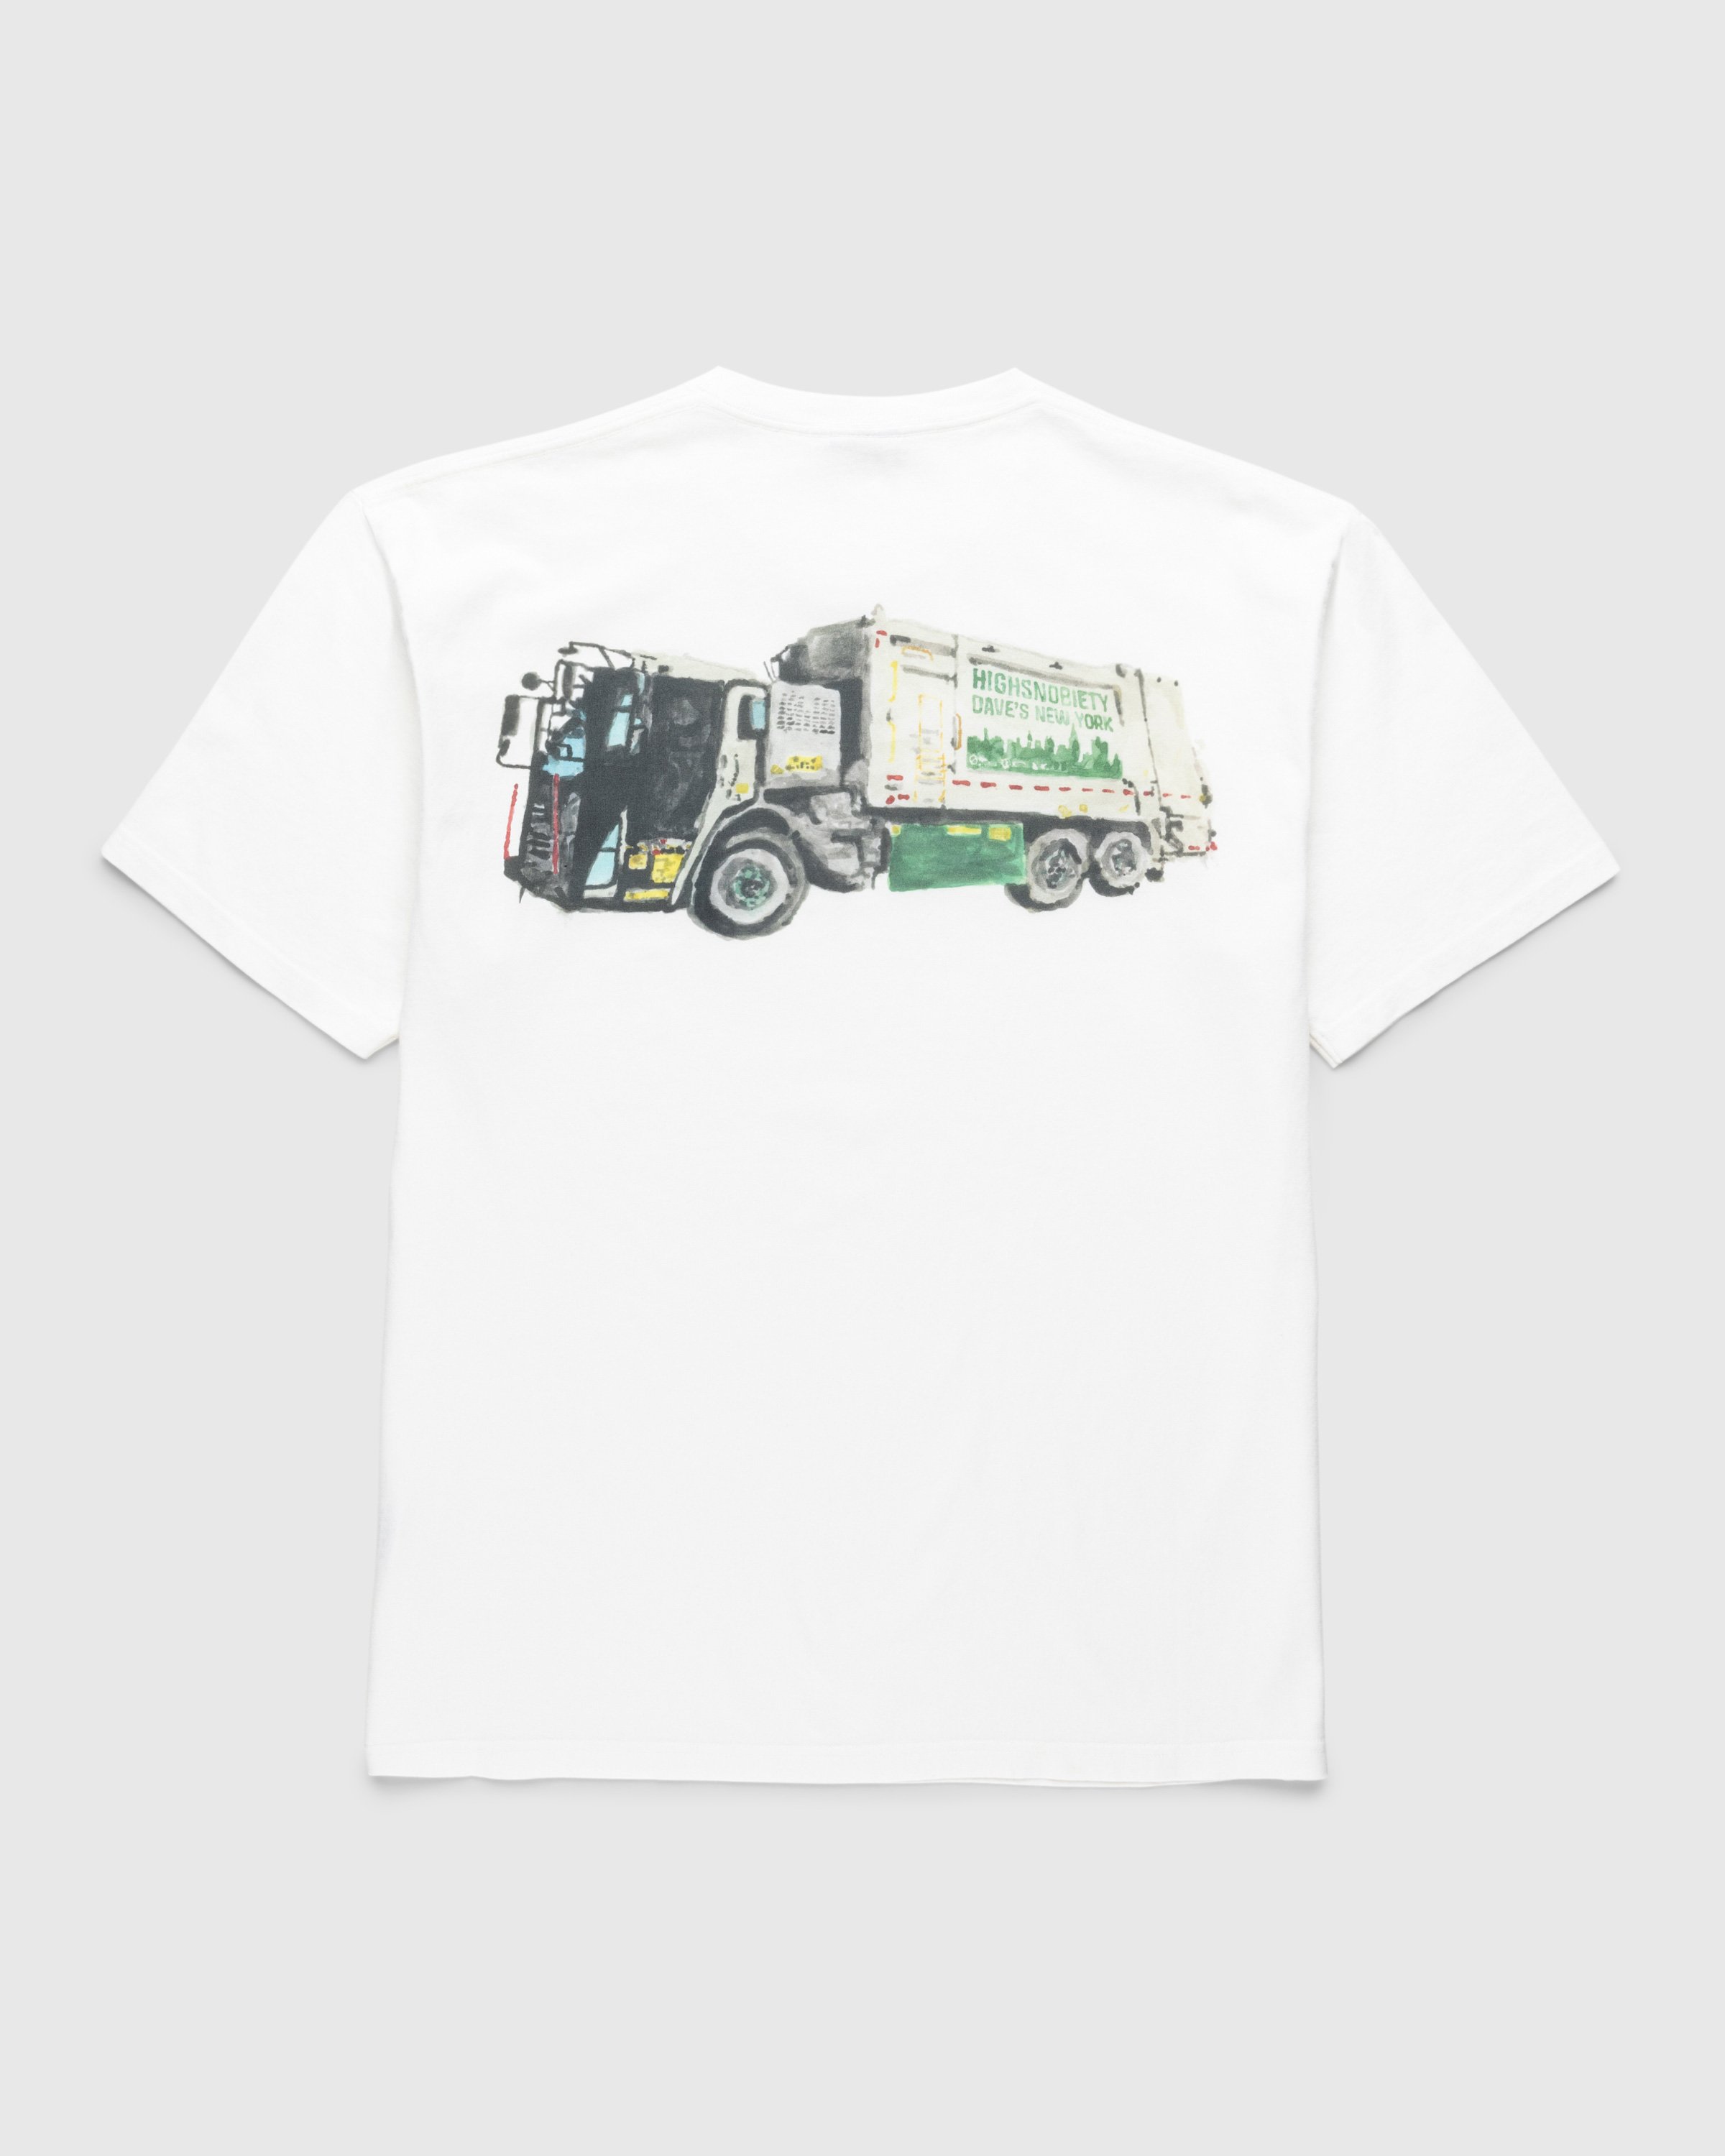 Dave's New York x Highsnobiety - White "Sanitation Truck" T-Shirt - Clothing - White - Image 1